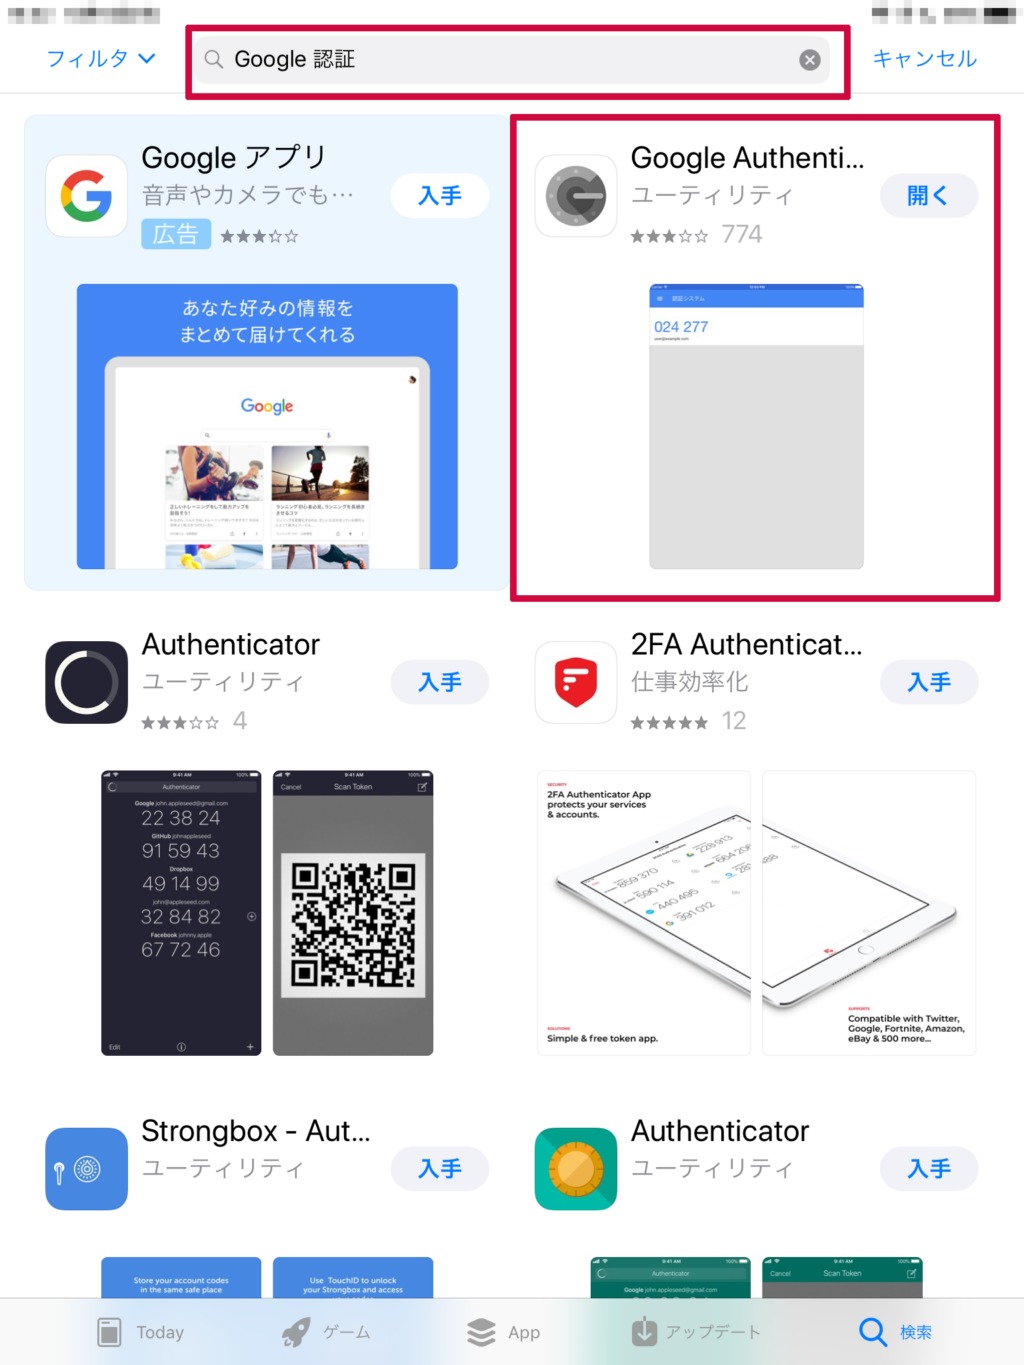 Google Authenticator（Google 認証システム）は、アップルストアやGoogleストアではこのように「Google 認証」などと検索しますと検索結果へ表示される